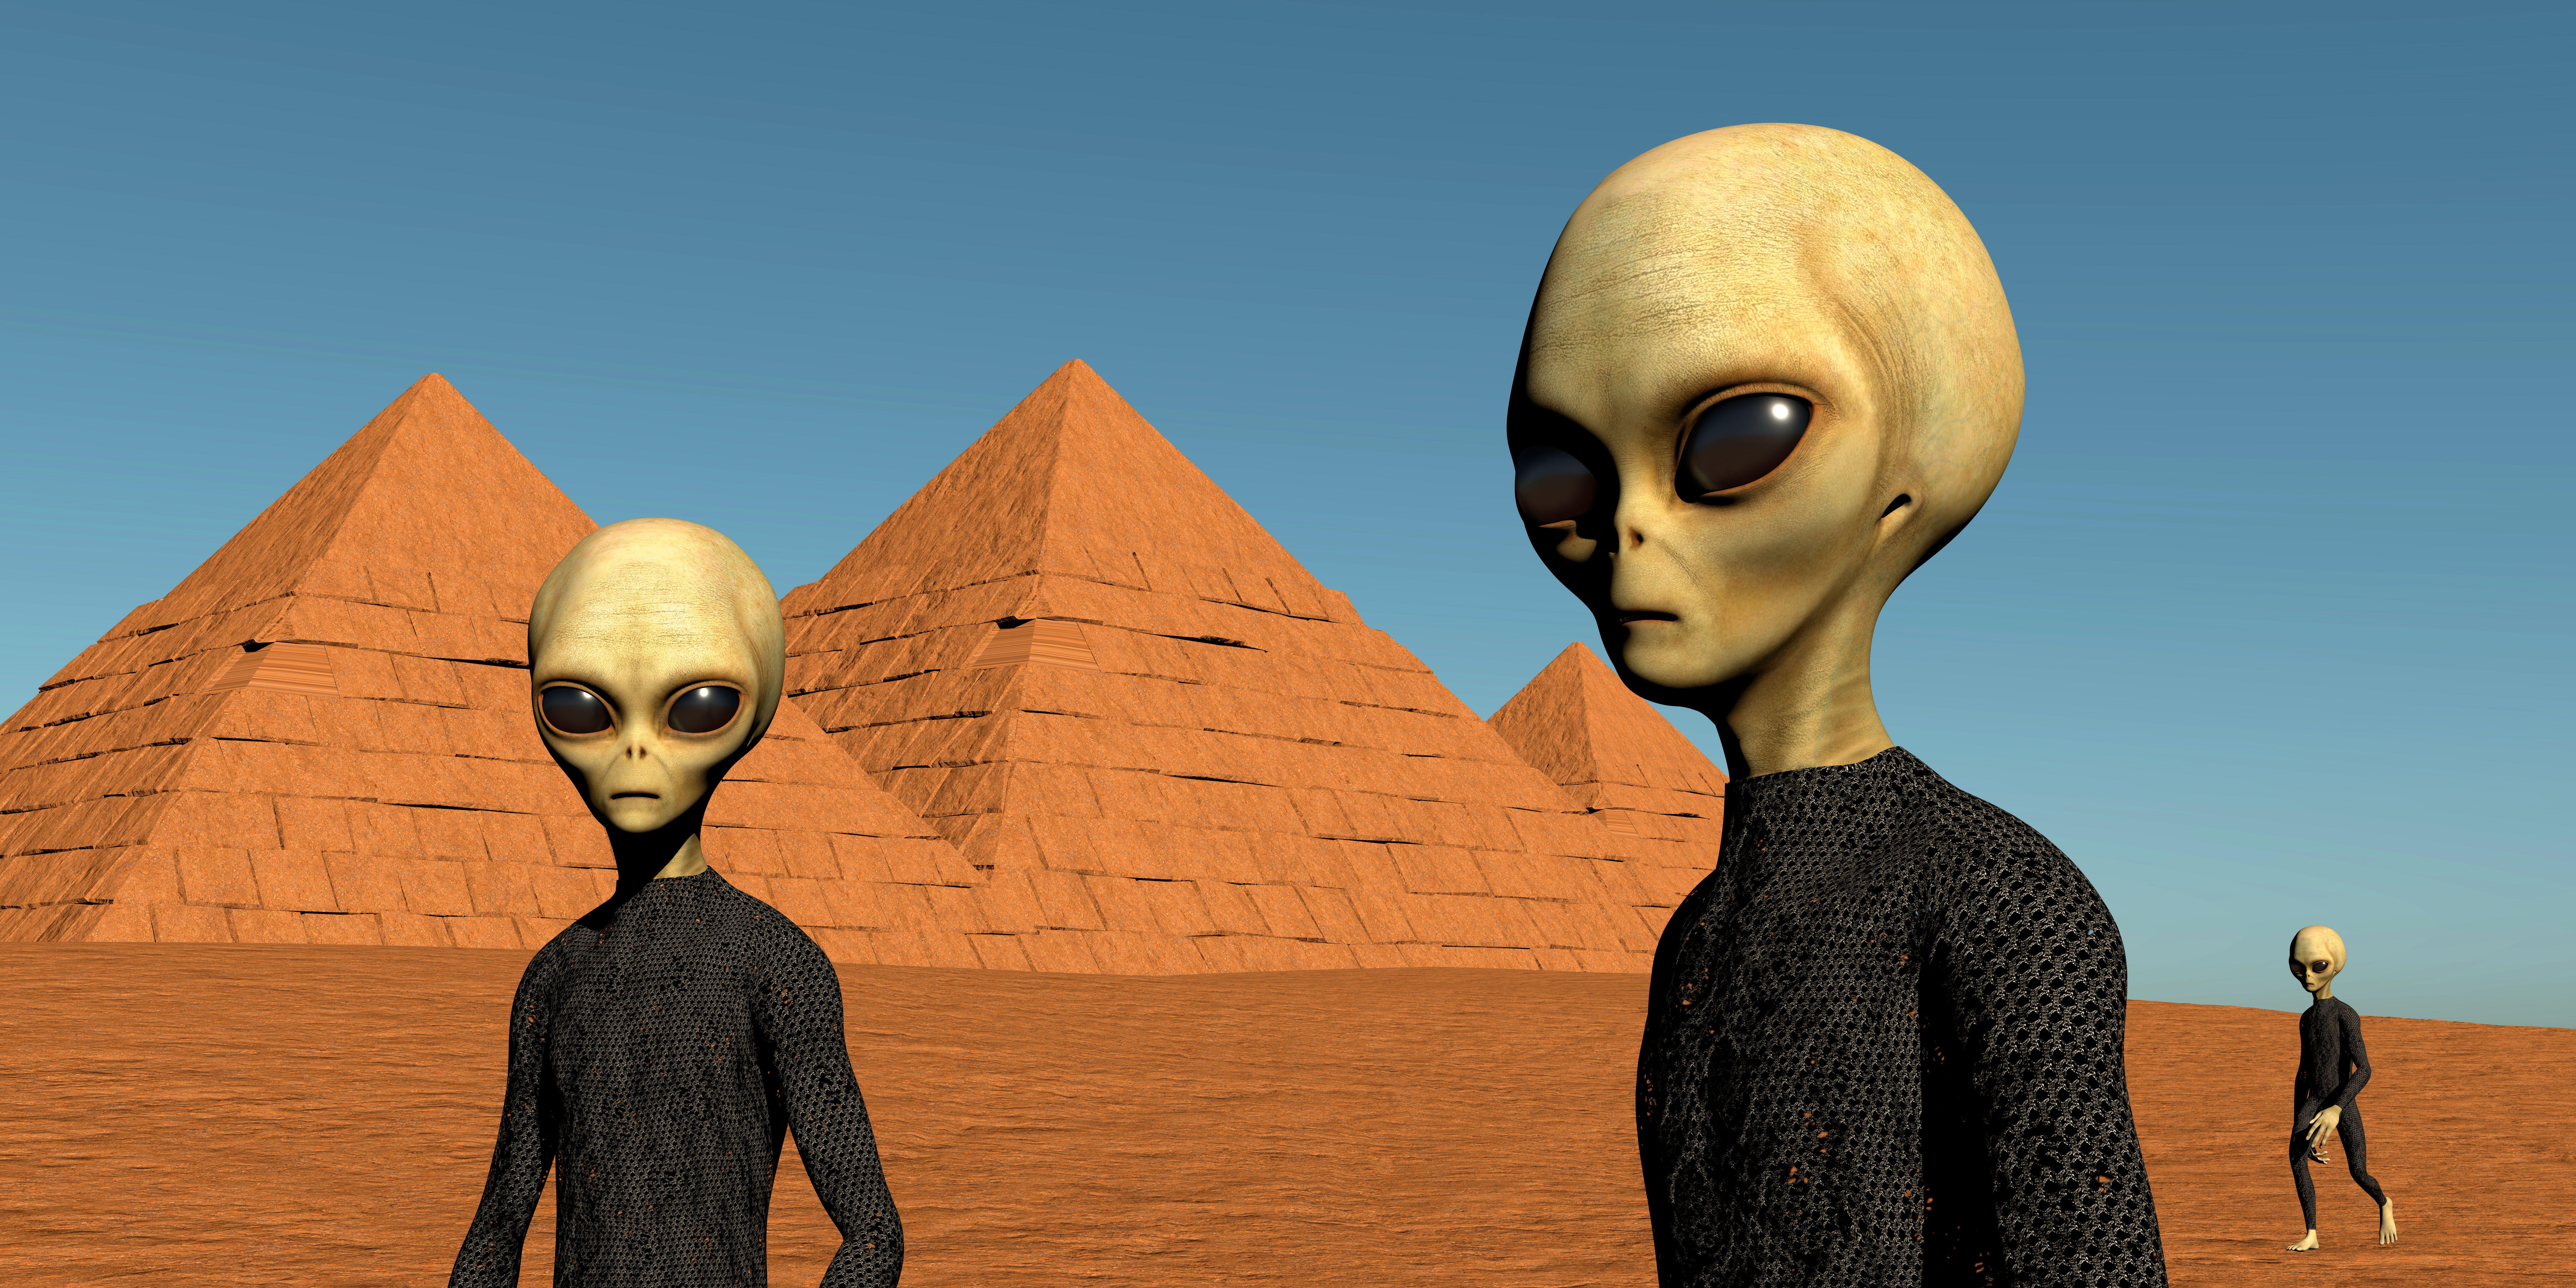 Comment peut-on croire que les pyramides ont été bâties par des extraterrestres ? image